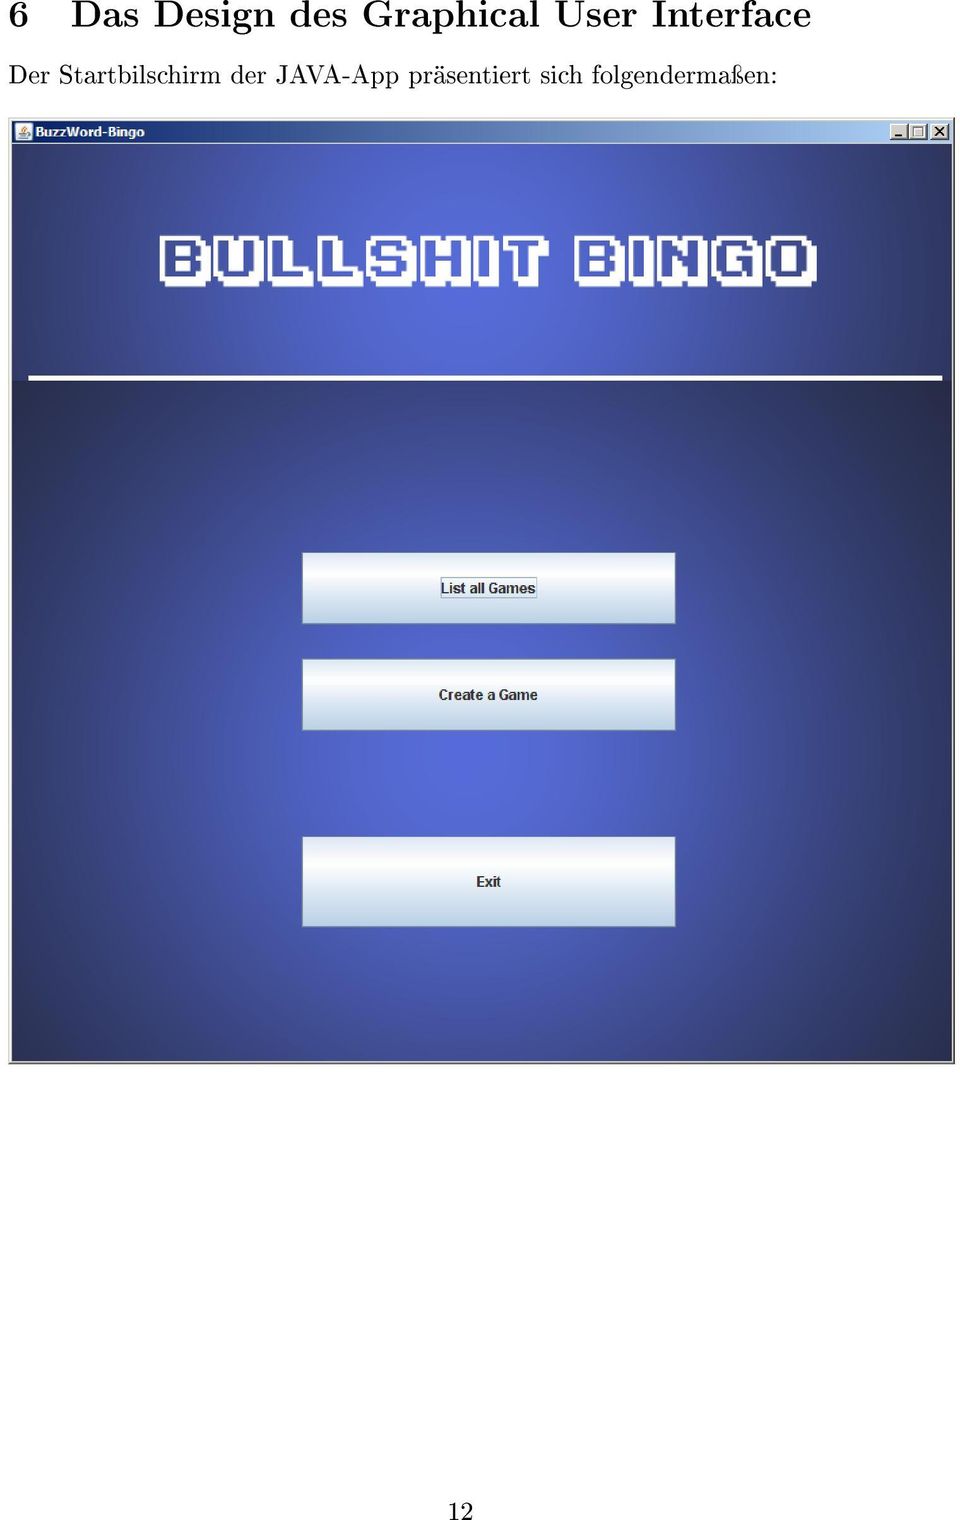 Startbilschirm der JAVA-App